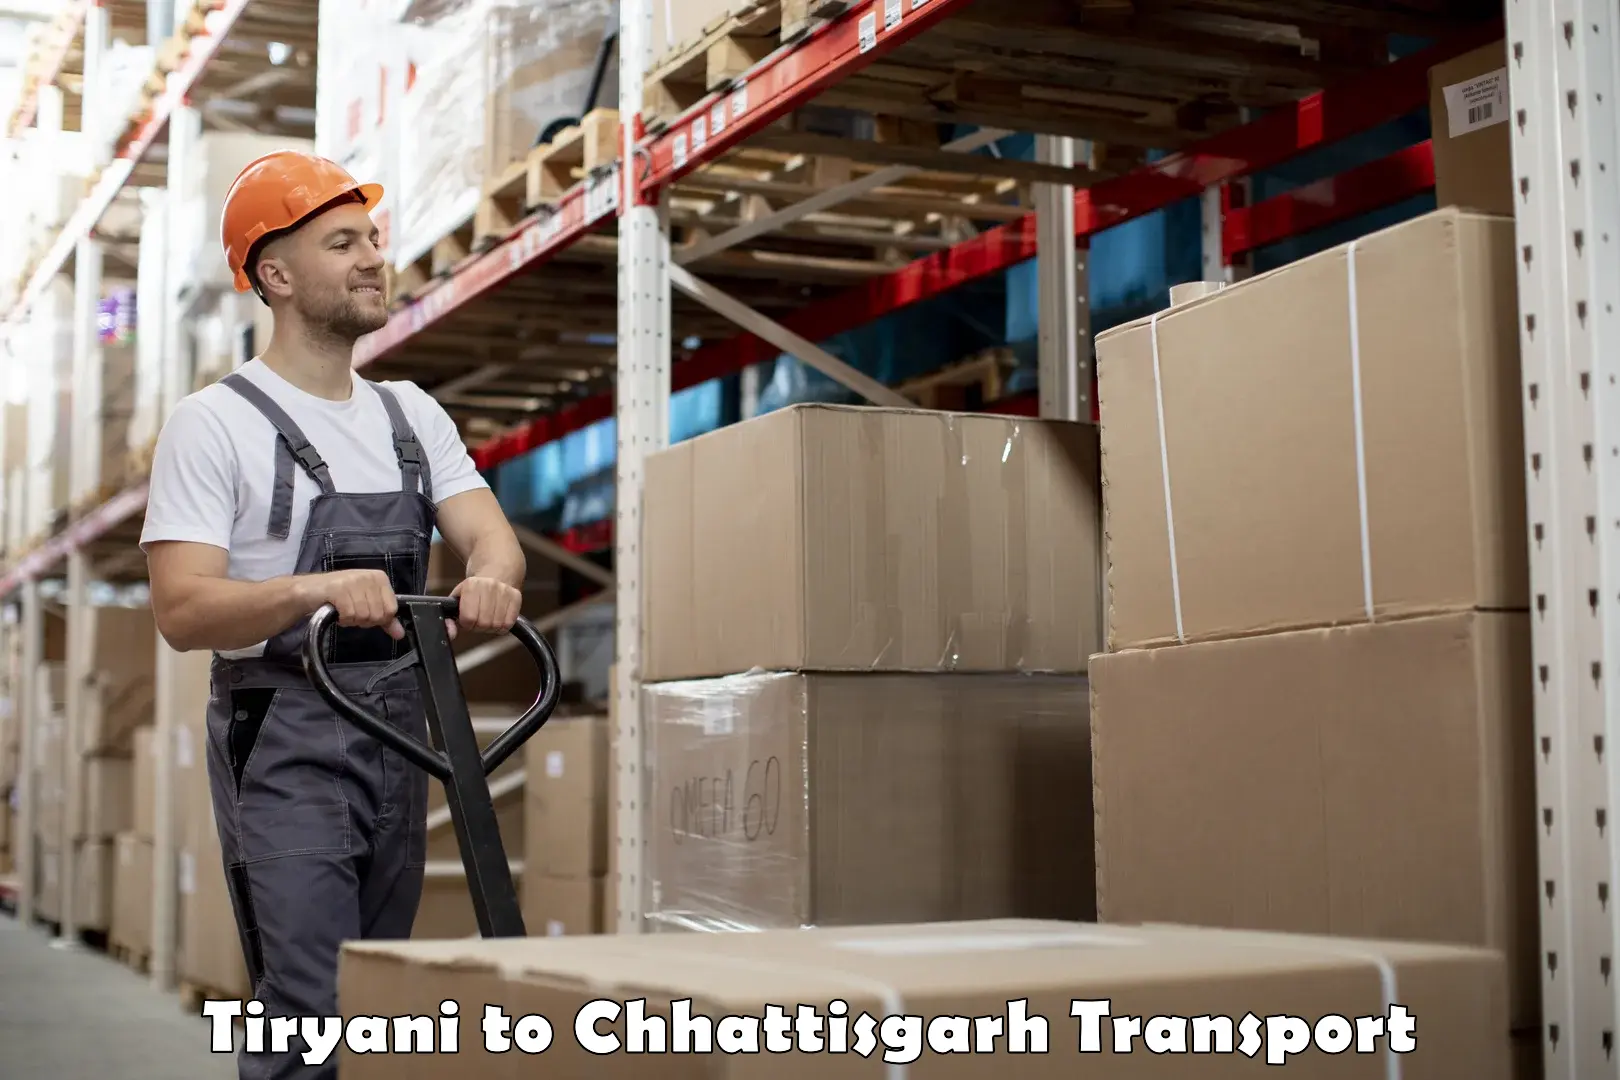 Cycle transportation service Tiryani to IIT Bhilai